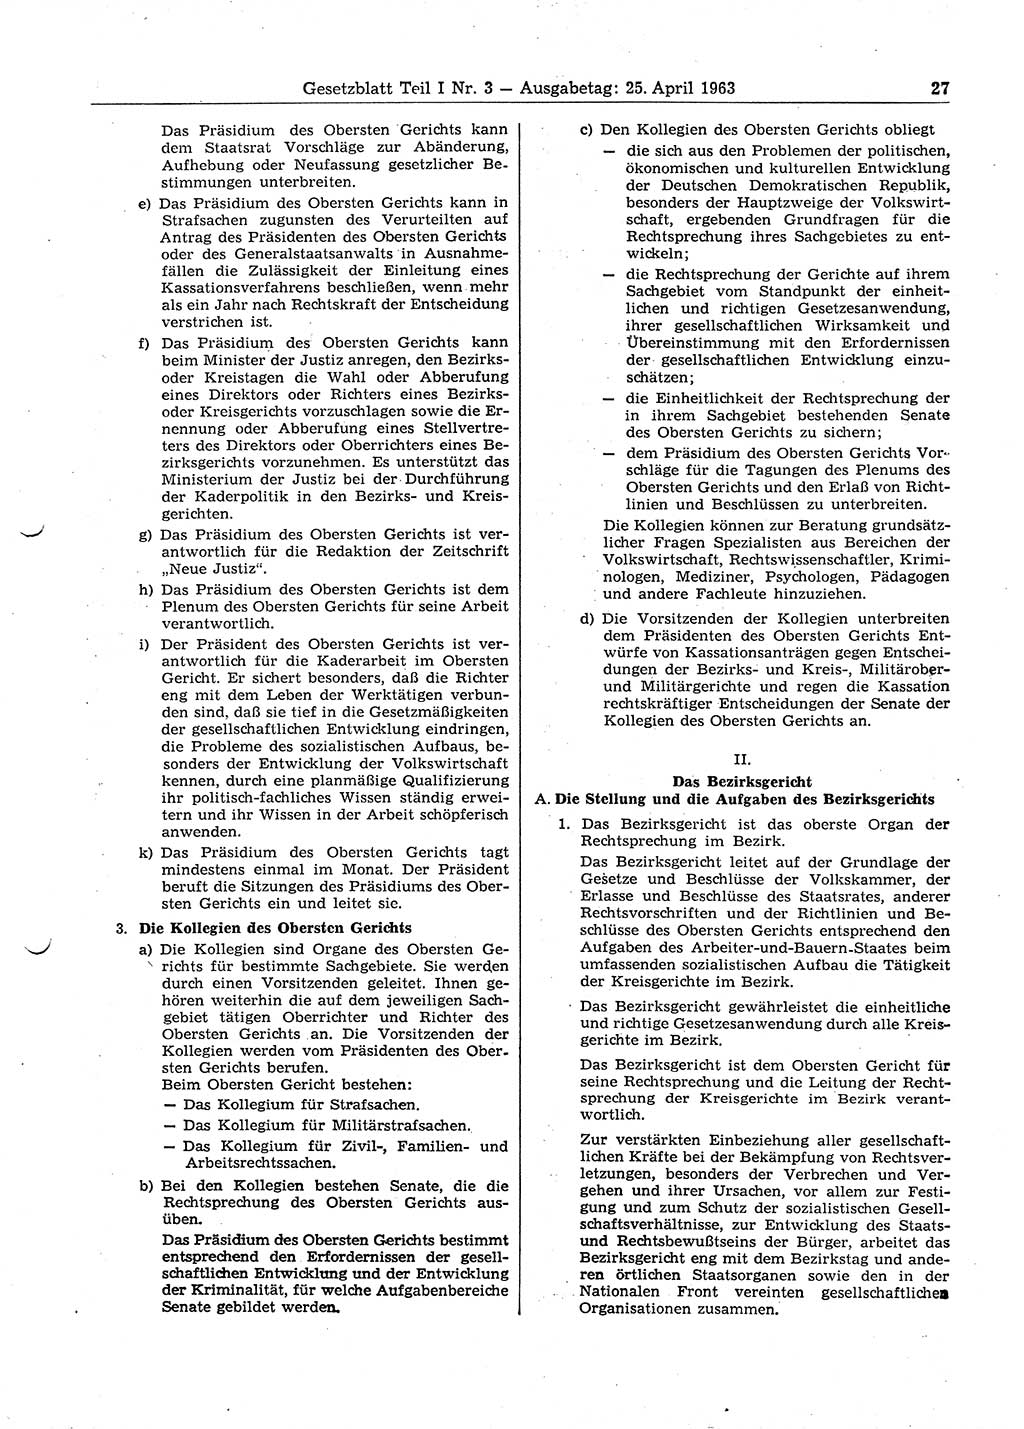 Gesetzblatt (GBl.) der Deutschen Demokratischen Republik (DDR) Teil Ⅰ 1963, Seite 27 (GBl. DDR Ⅰ 1963, S. 27)